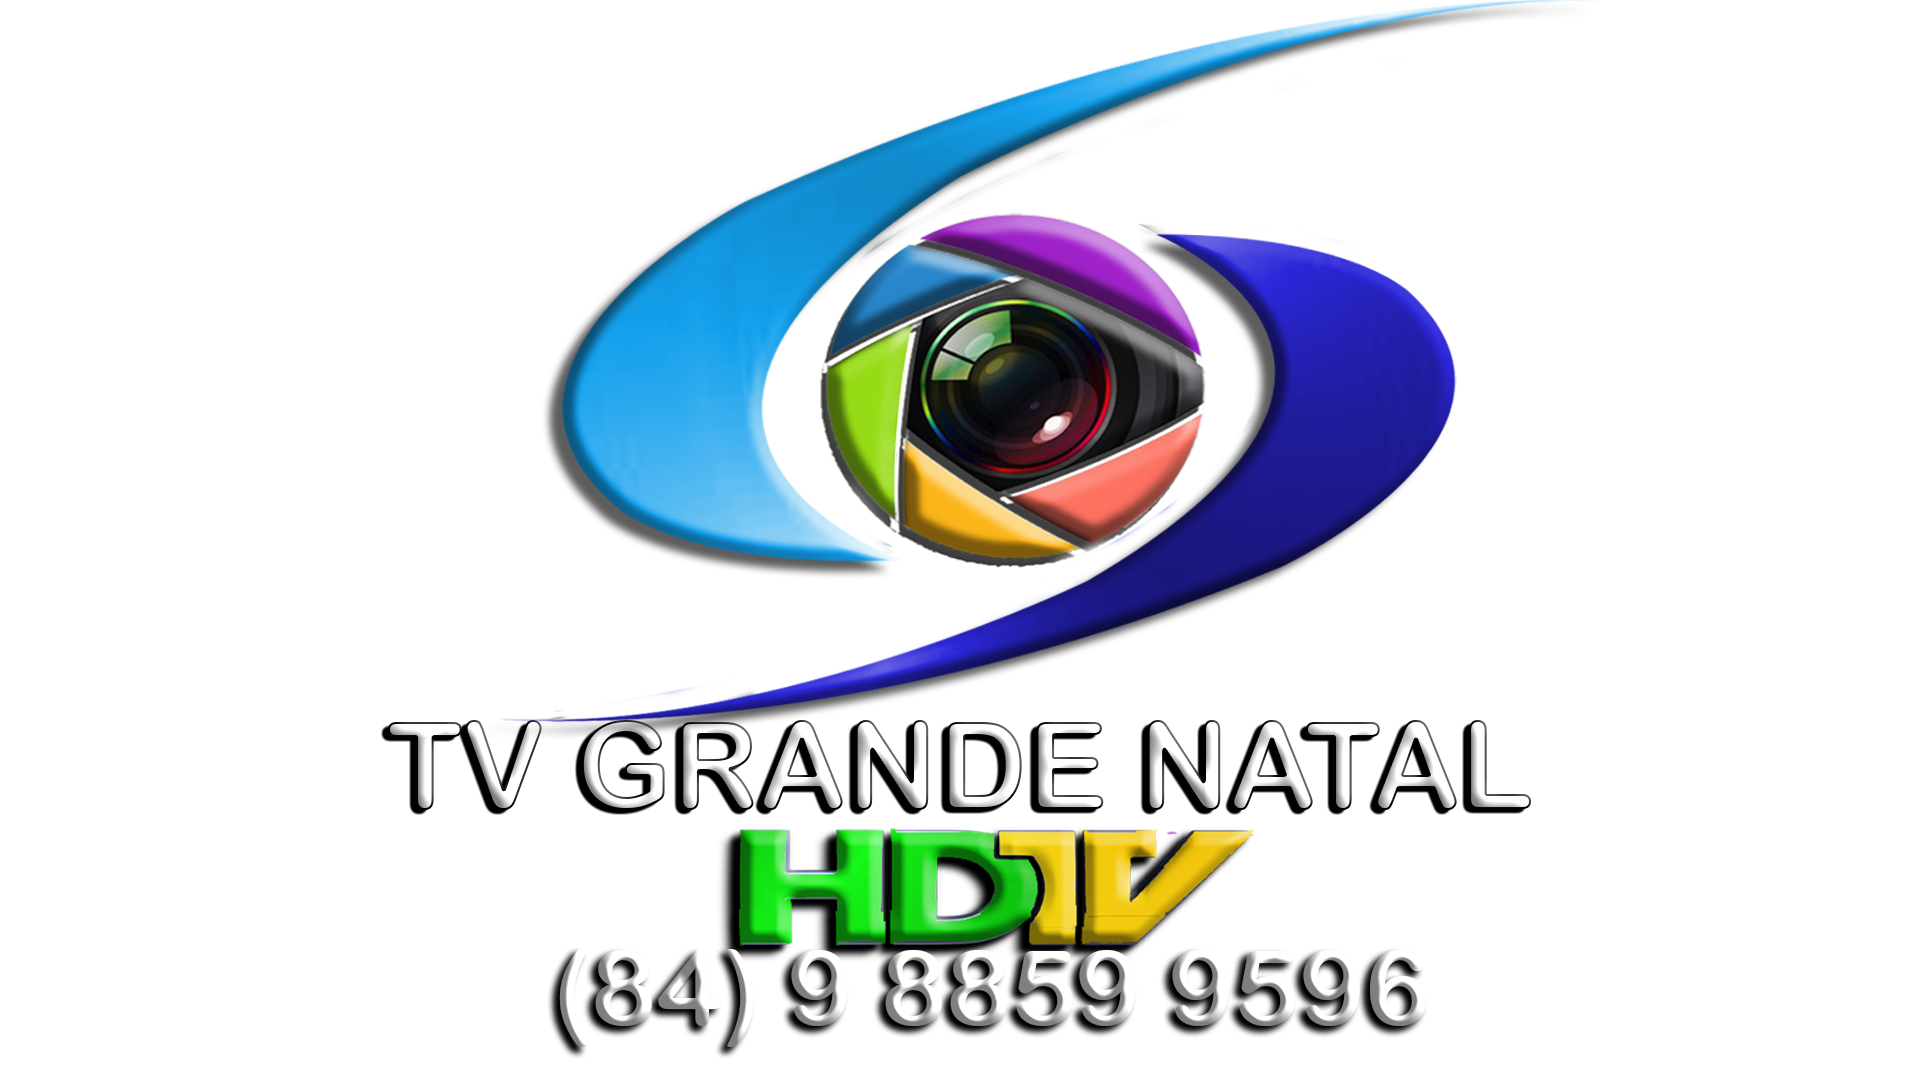 TV Grande Natal HDTV